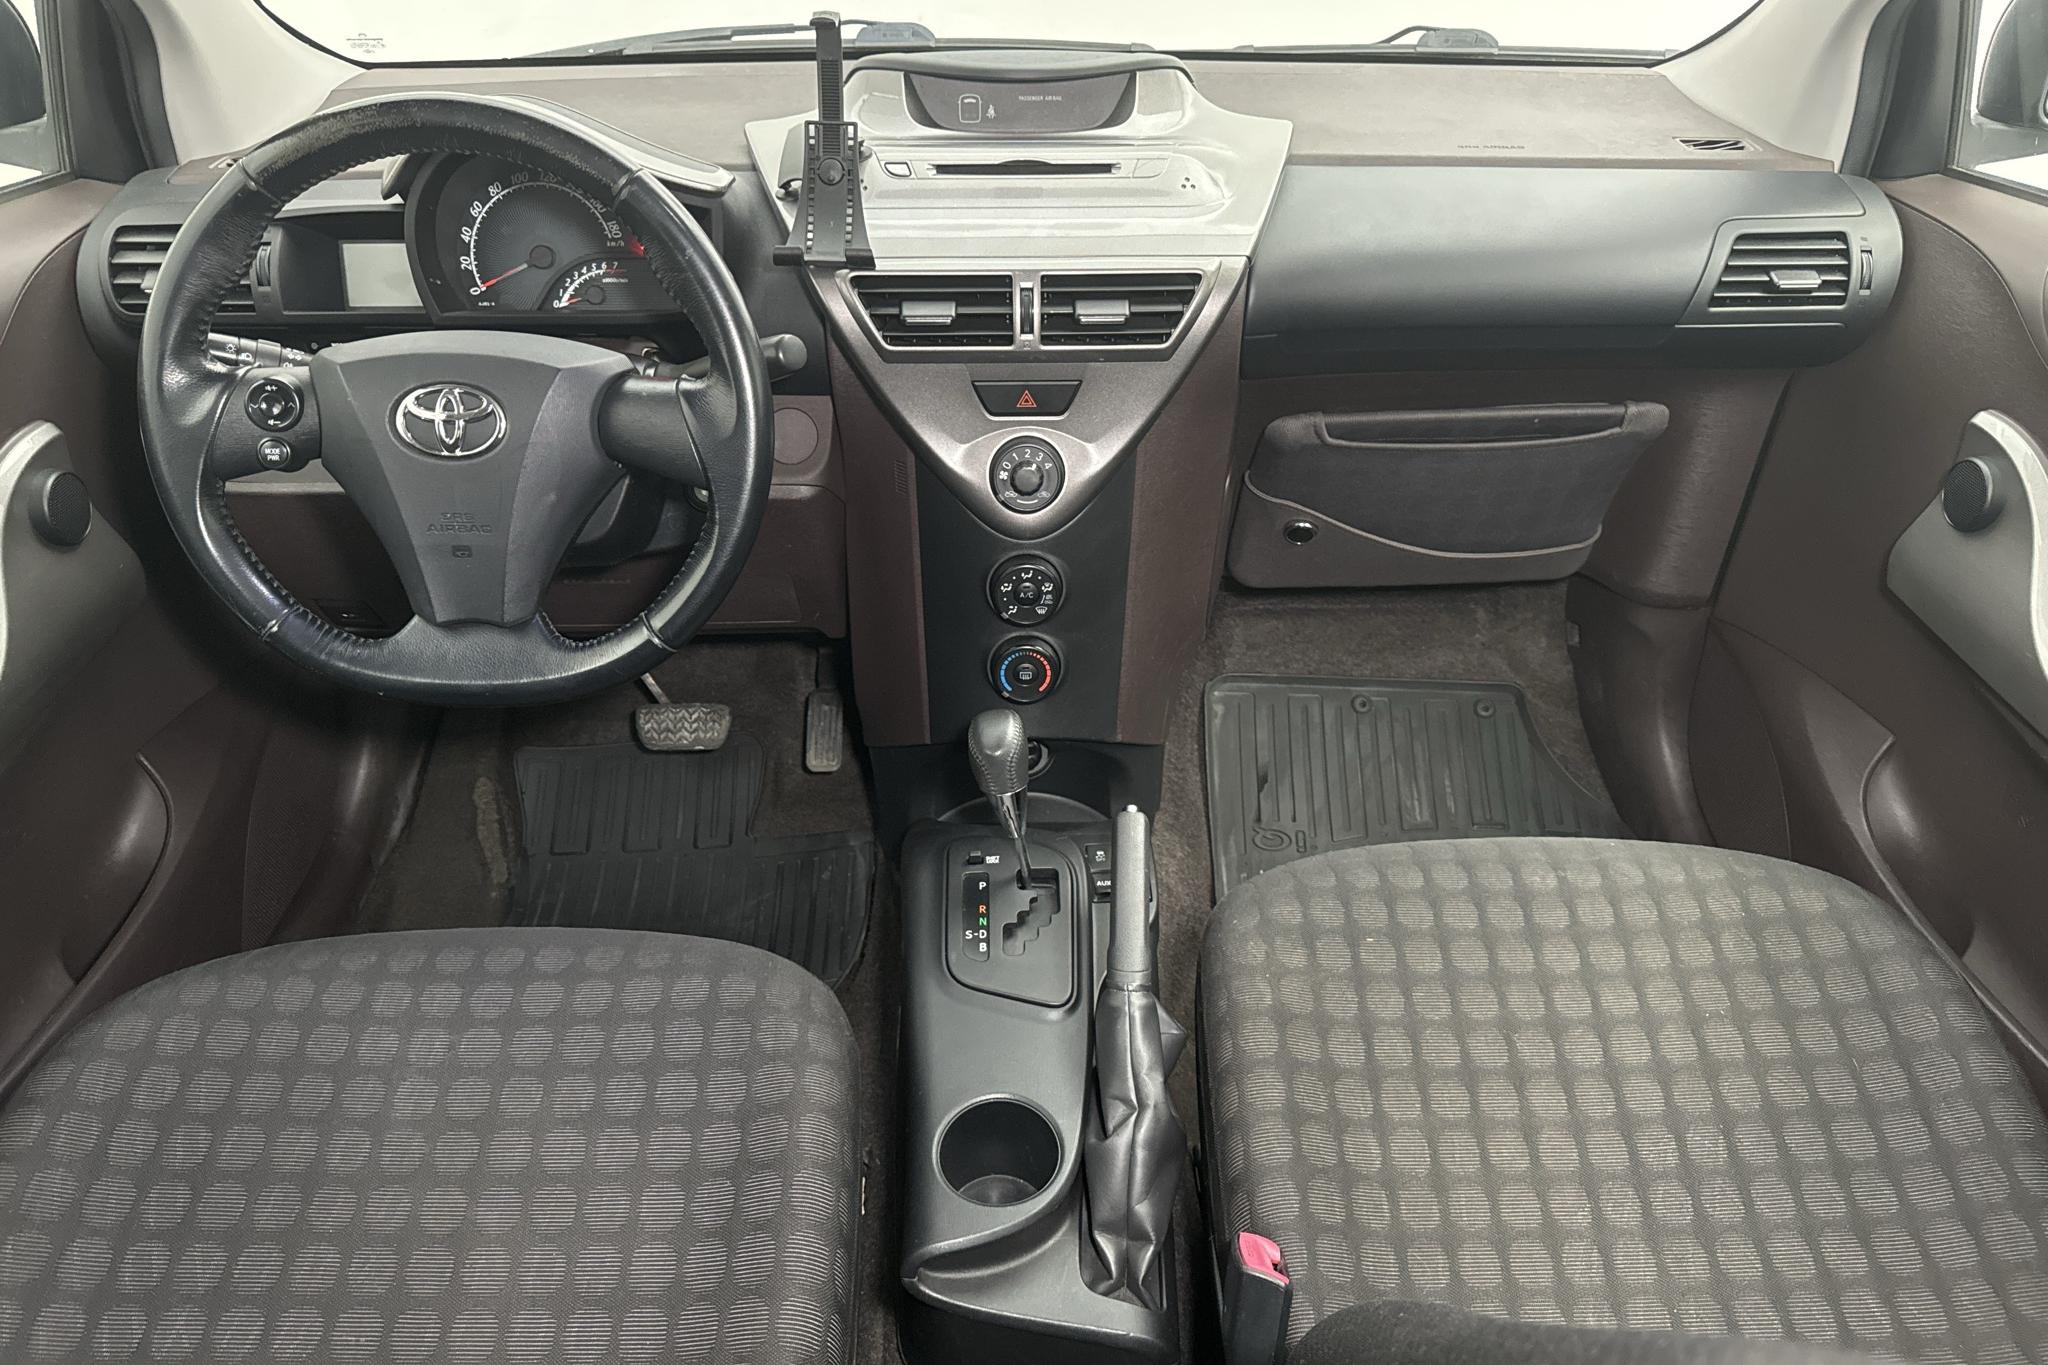 Toyota iQ 1.0 (68hk) - 119 570 km - Automatyczna - 2009